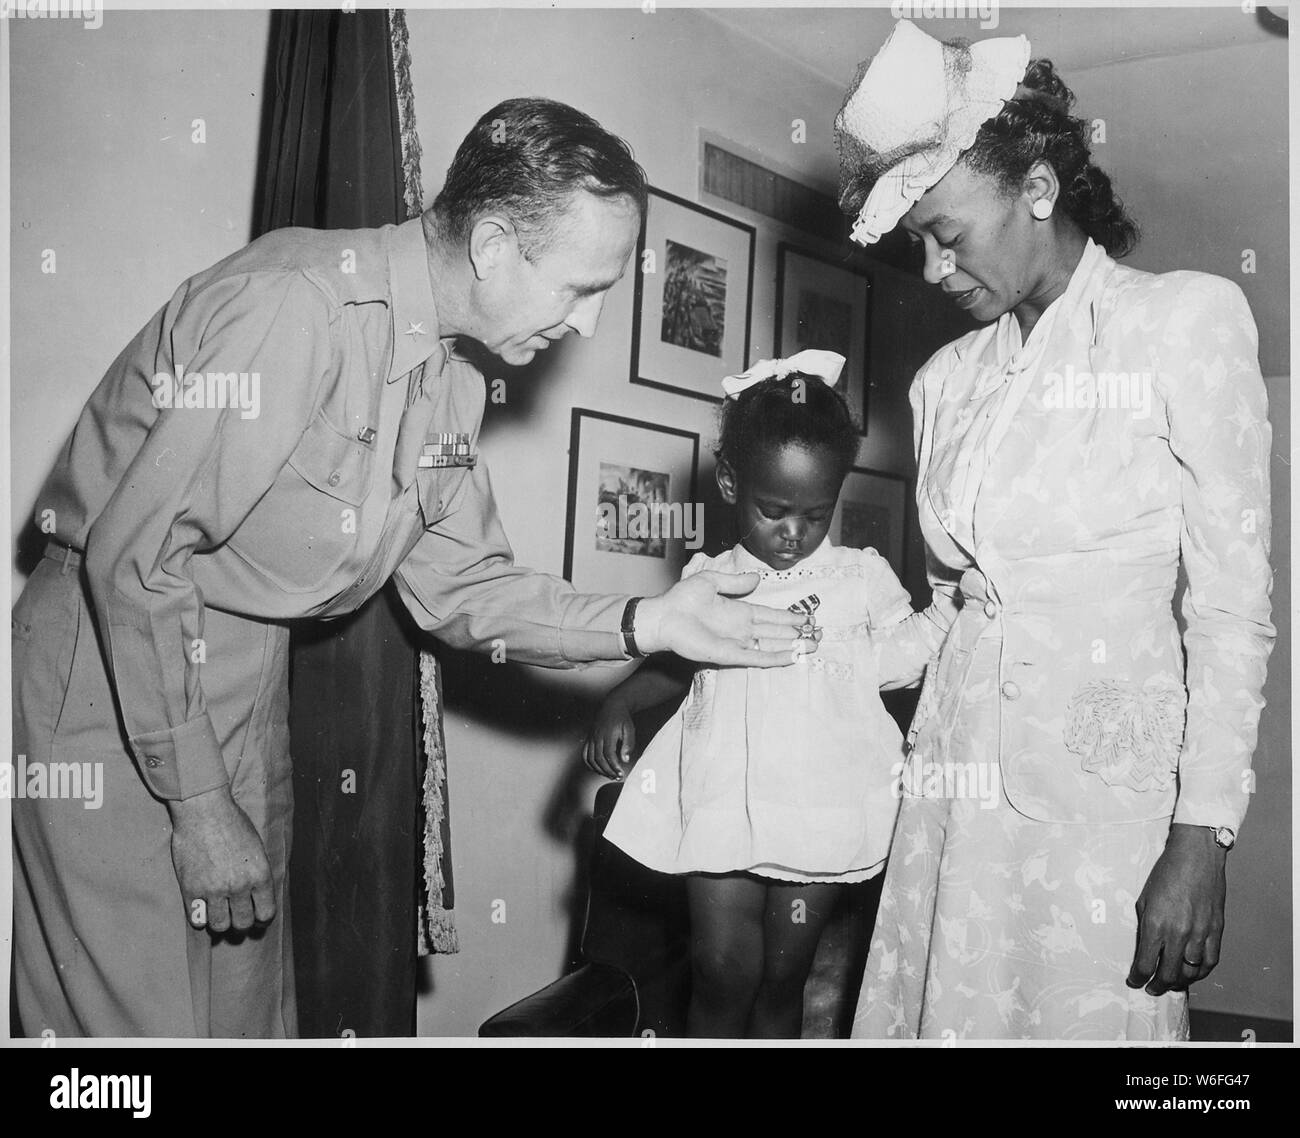 Le brig. Le général Robert N. Young, général commandant du district militaire de Washington, aide Melba Rose, âgés de 2, fille de Mme Rosie L. Madison,...dans l'affichage de la Silver Star à titre posthume, son père 1Le lieutenant John W. Madison, de la 92e Division d'infanterie, qui a été tué dans l'action en Italie..., ca. 1941 - ca. 1945 Banque D'Images